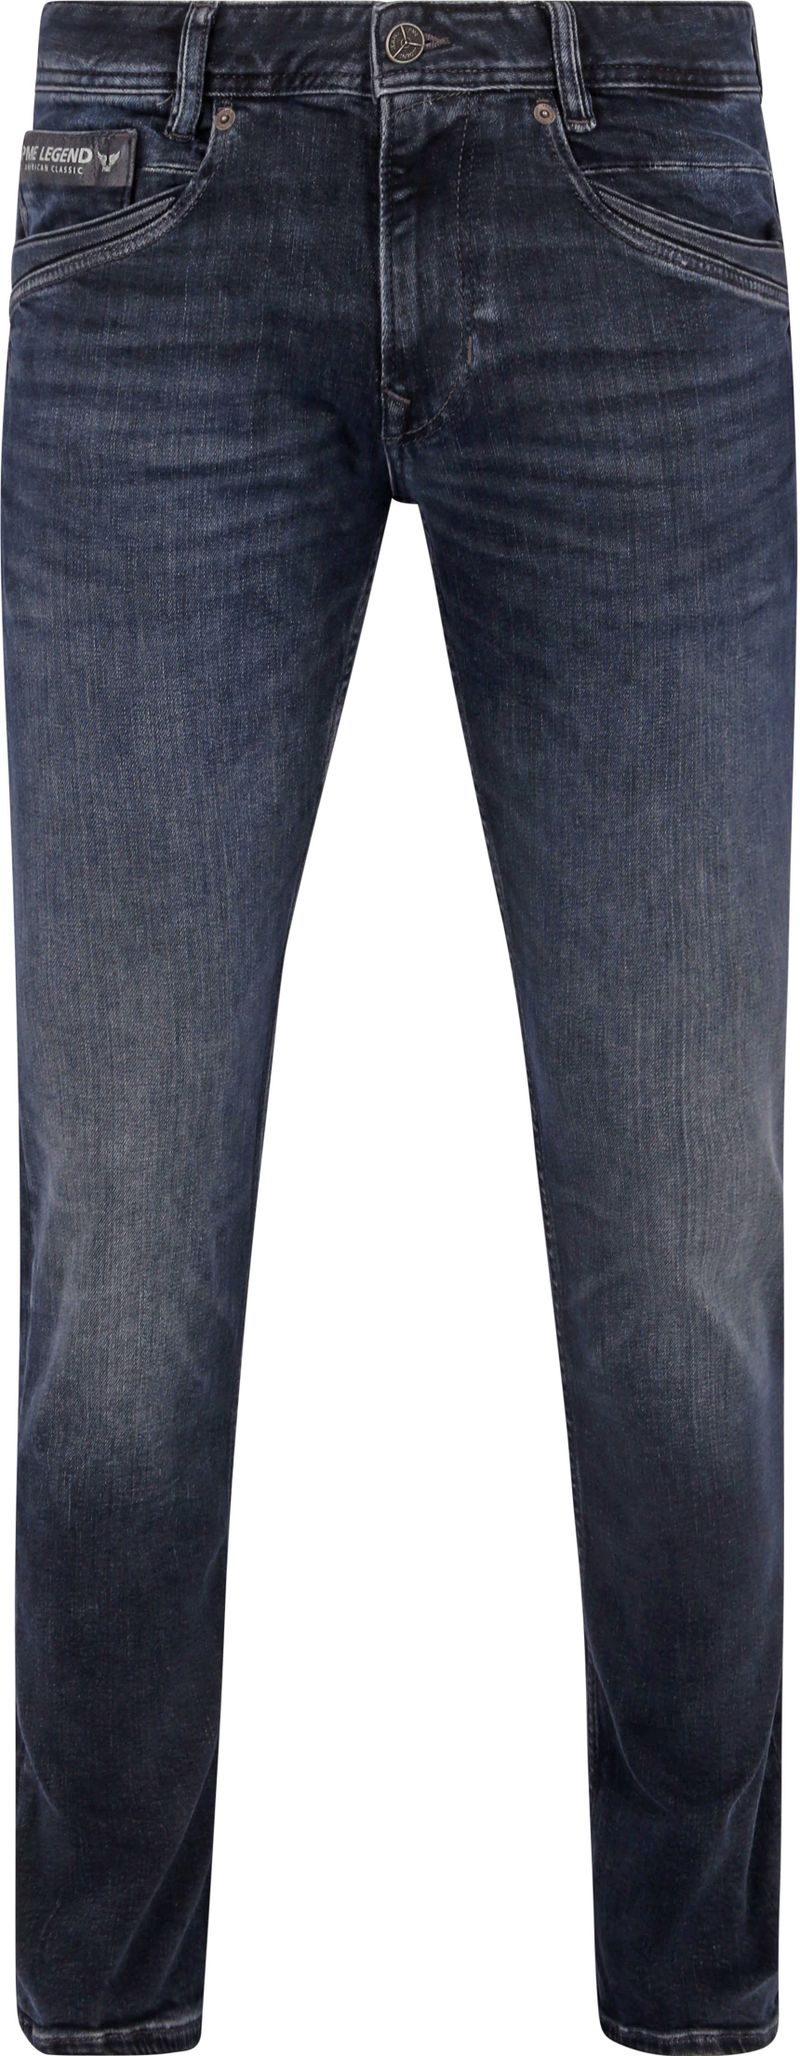 PME Legend Skyrak Jeans Blau DII - Größe W 35 - L 34 günstig online kaufen